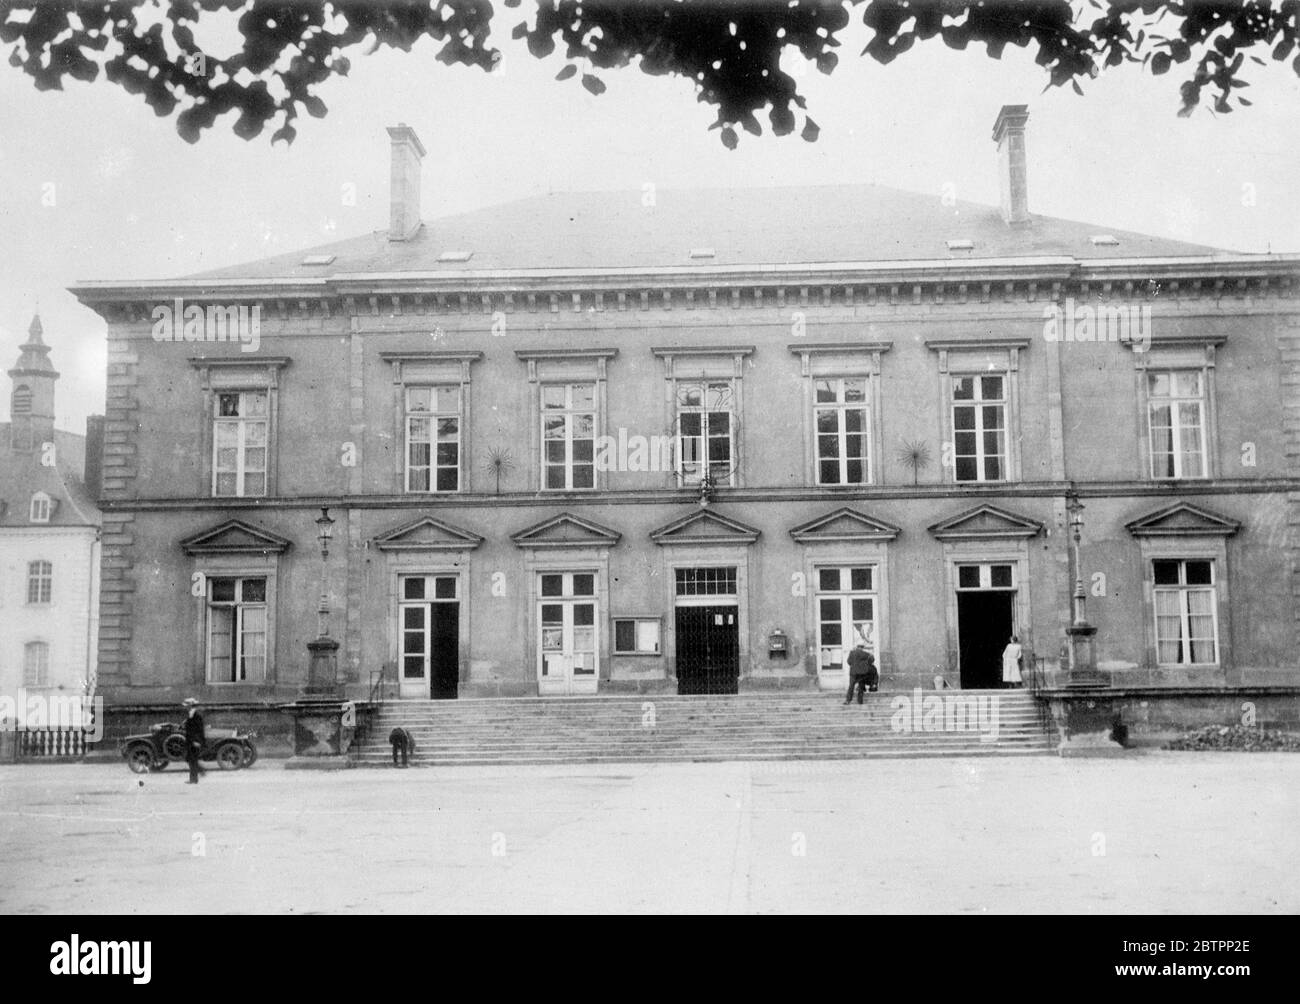 L'Hôtel de ville de Luxembourg. Septembre 1938 Banque D'Images